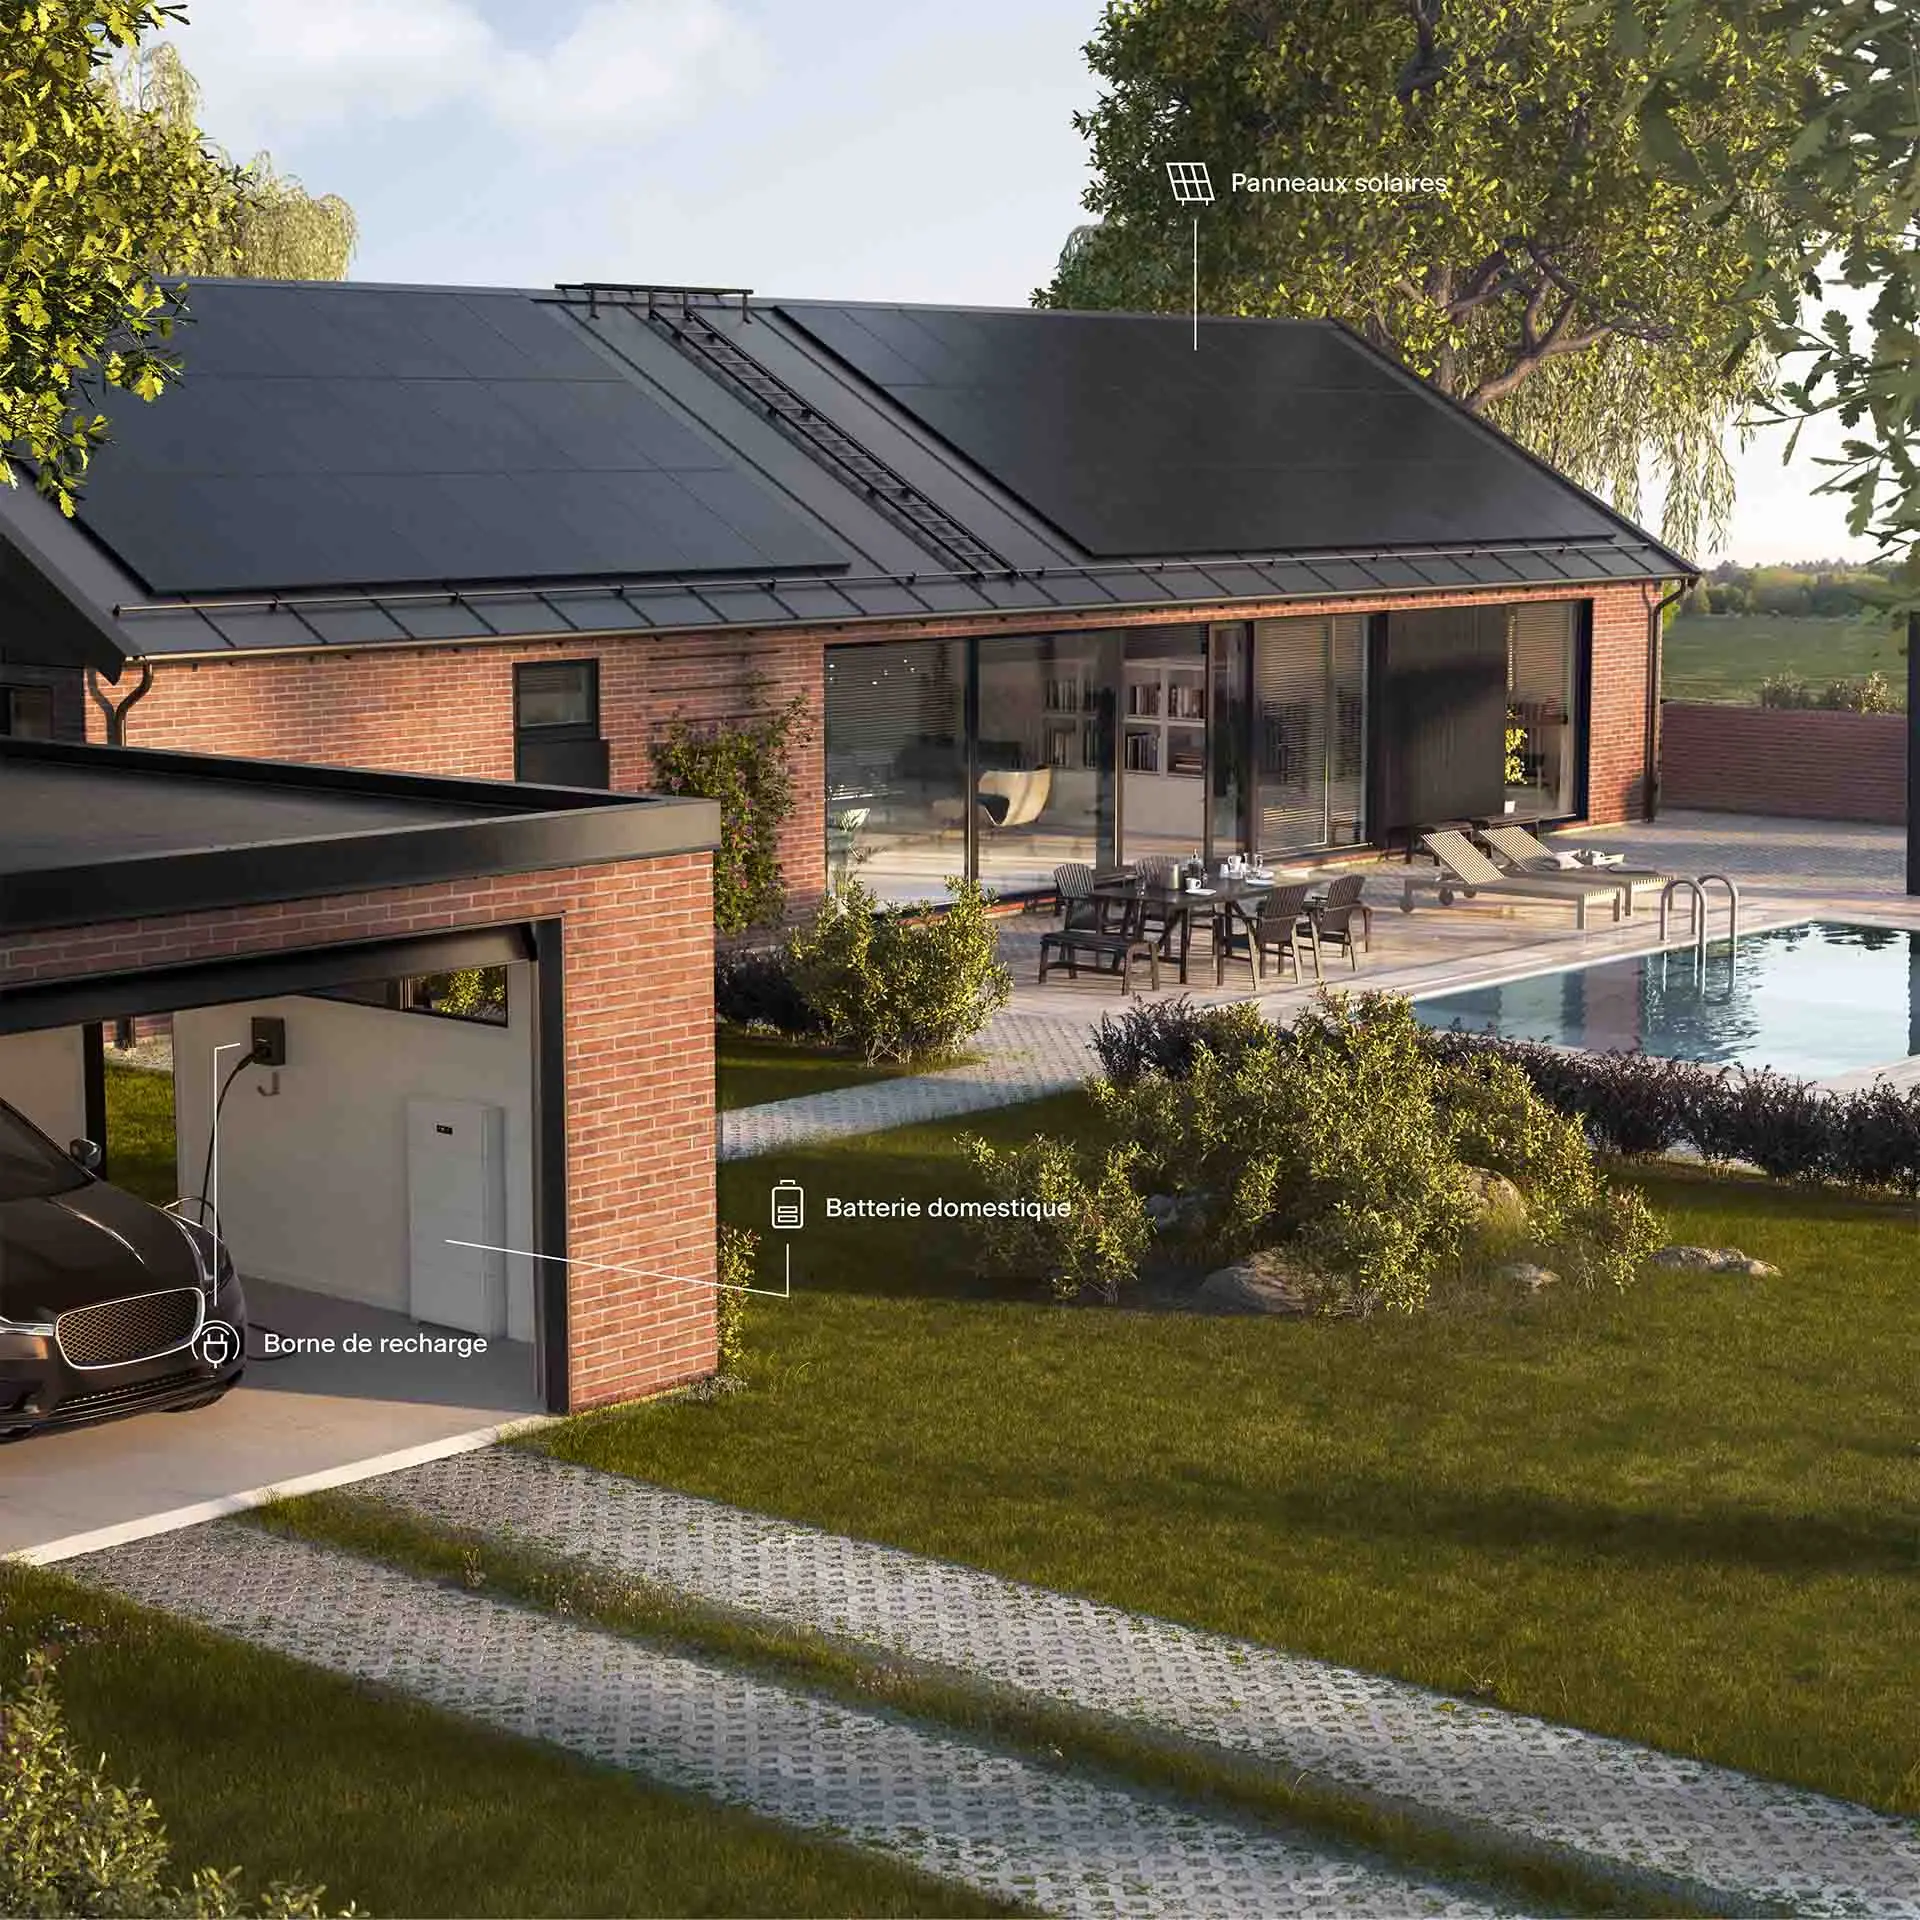 Maison avec installation solaire complète : panneaux solaires, batterie domestique et station de recharge